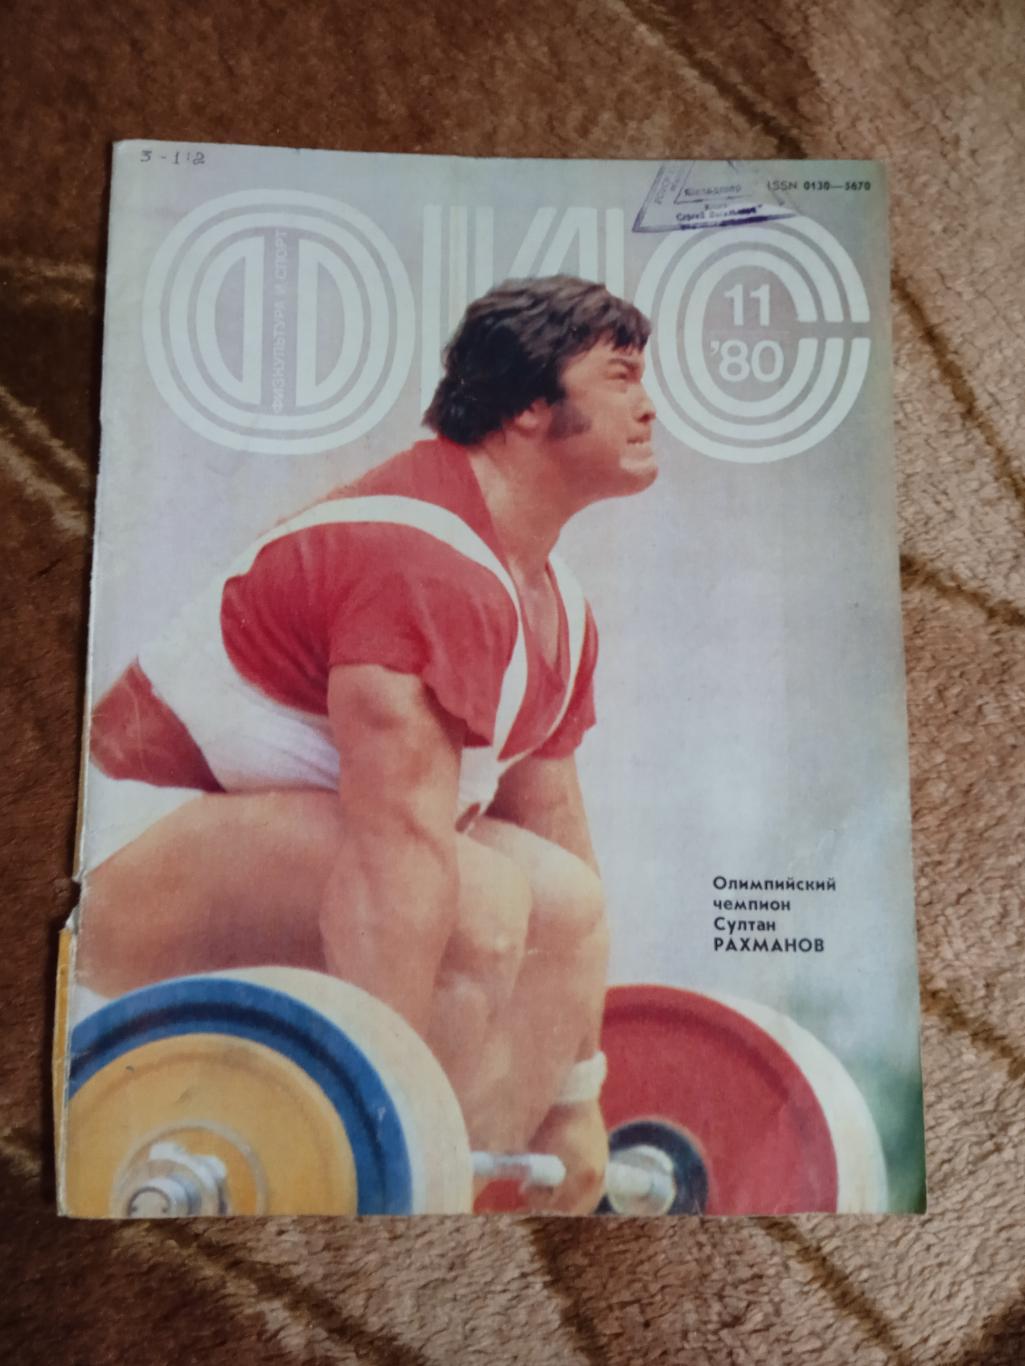 Постер.Тяжелая атлетика.С.Раманов.Журнал ФиС 1980 г.